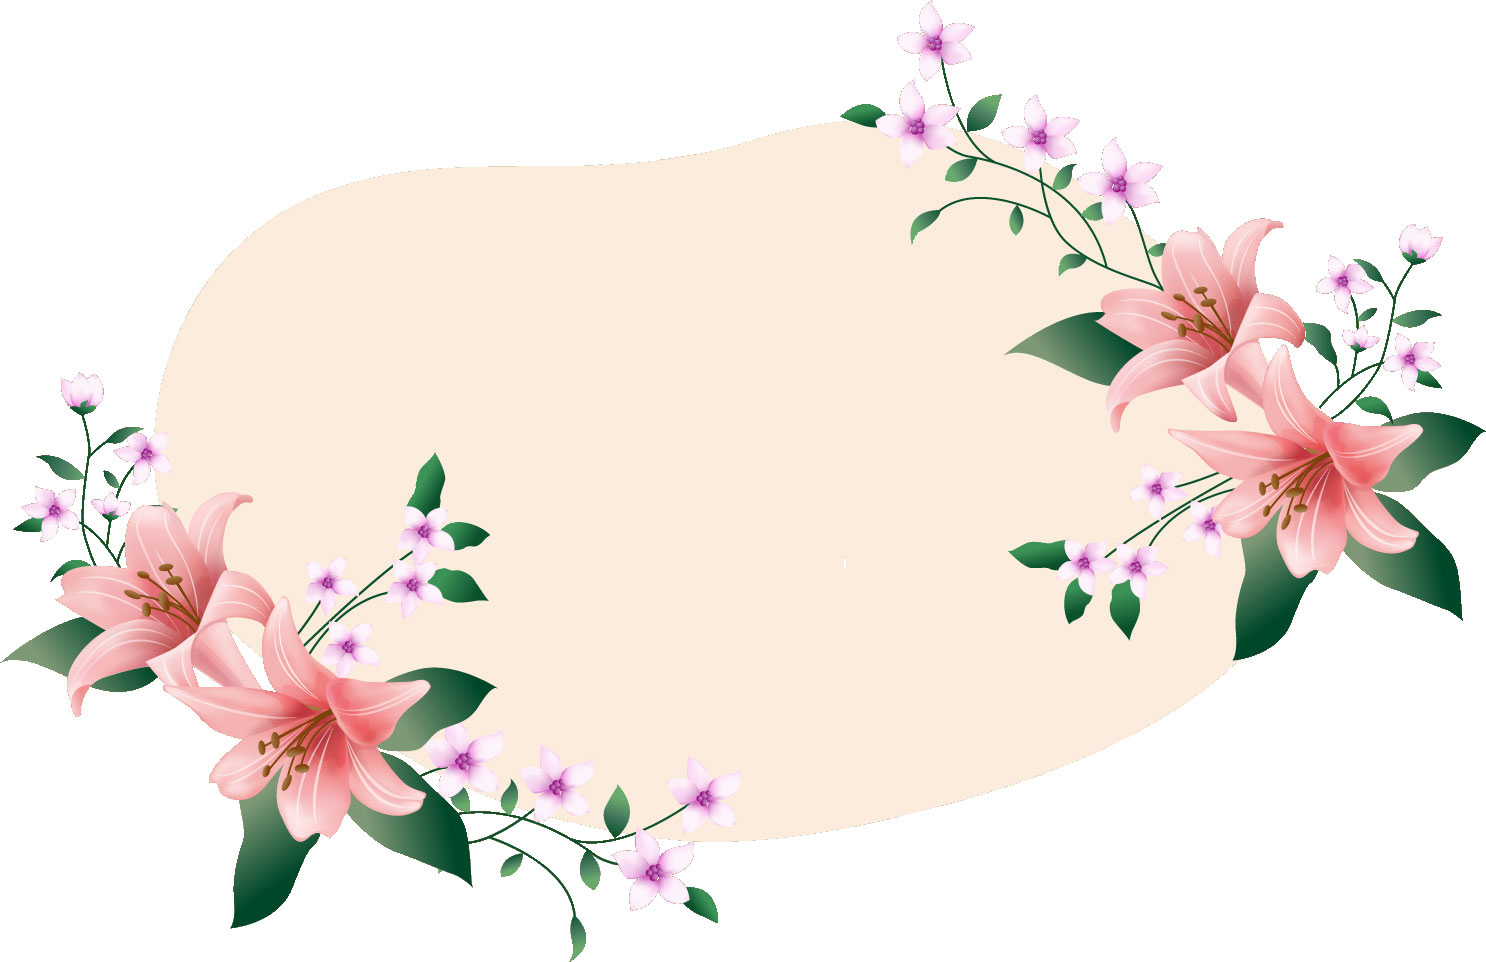 百合 ゆり の花の画像 イラスト フリー素材 No 148 ピンクのゆり